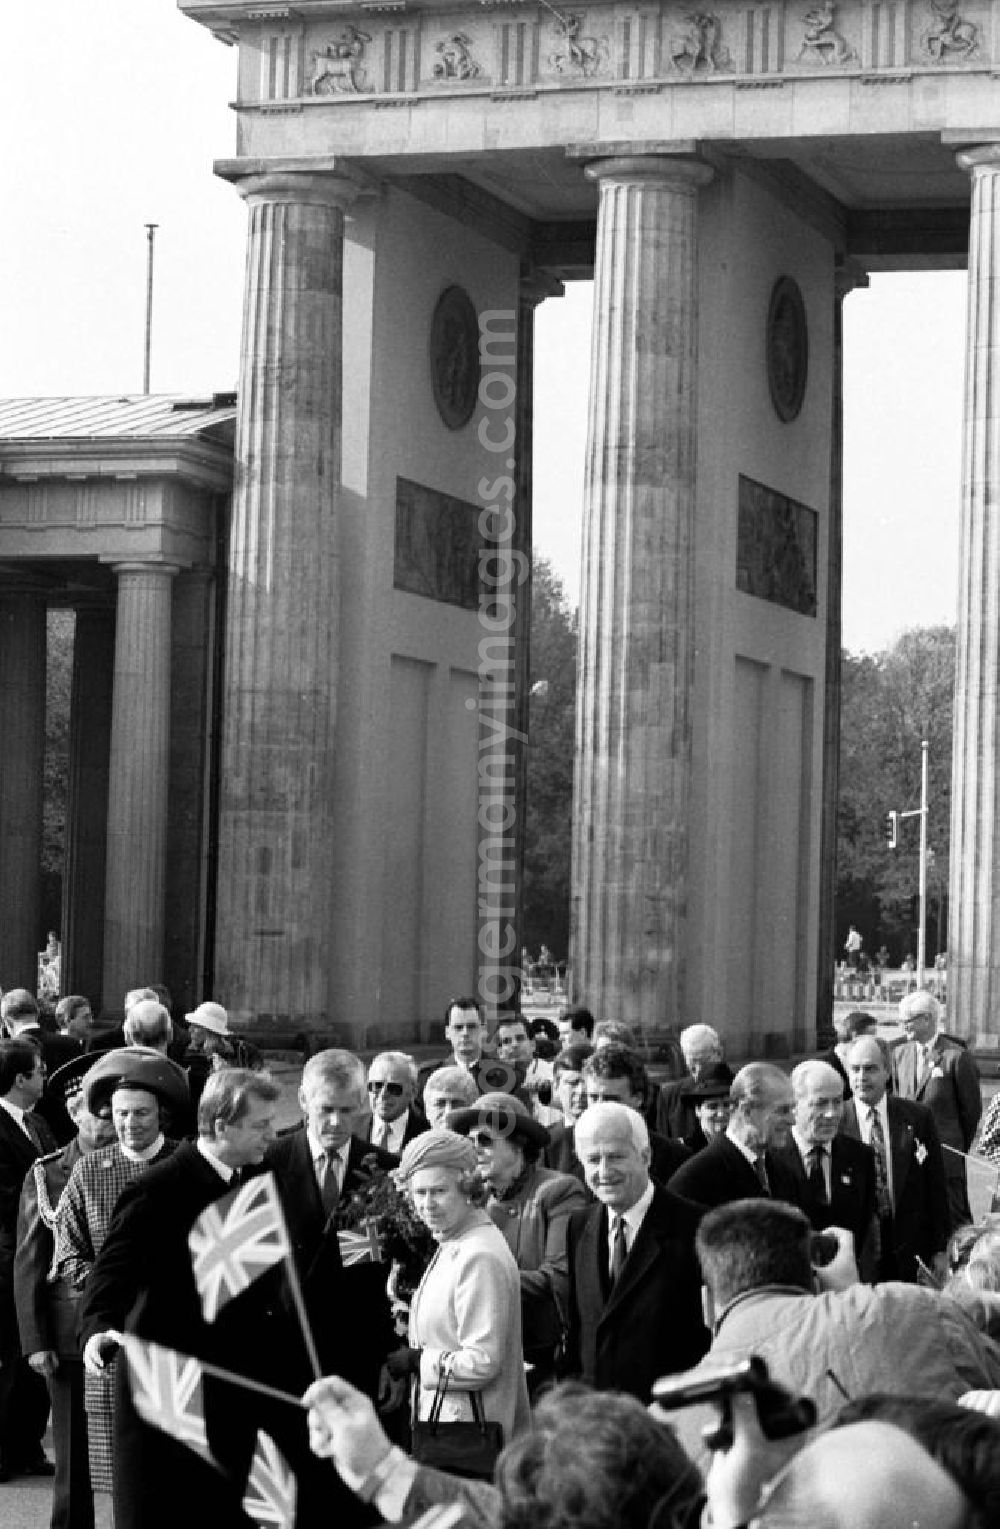 Berlin-Mitte: Besuch der Königin Elisabeth II. (Queen Elisabeth II.) des Vereinigten Königreich von Großbritannien und Nordirland in Berlin. Königin Elisabeth II. steht zusammen mit Delegierten, unter anderem ist Prinz Philip im Hintergrund, vor dem Brandenburger Tor.